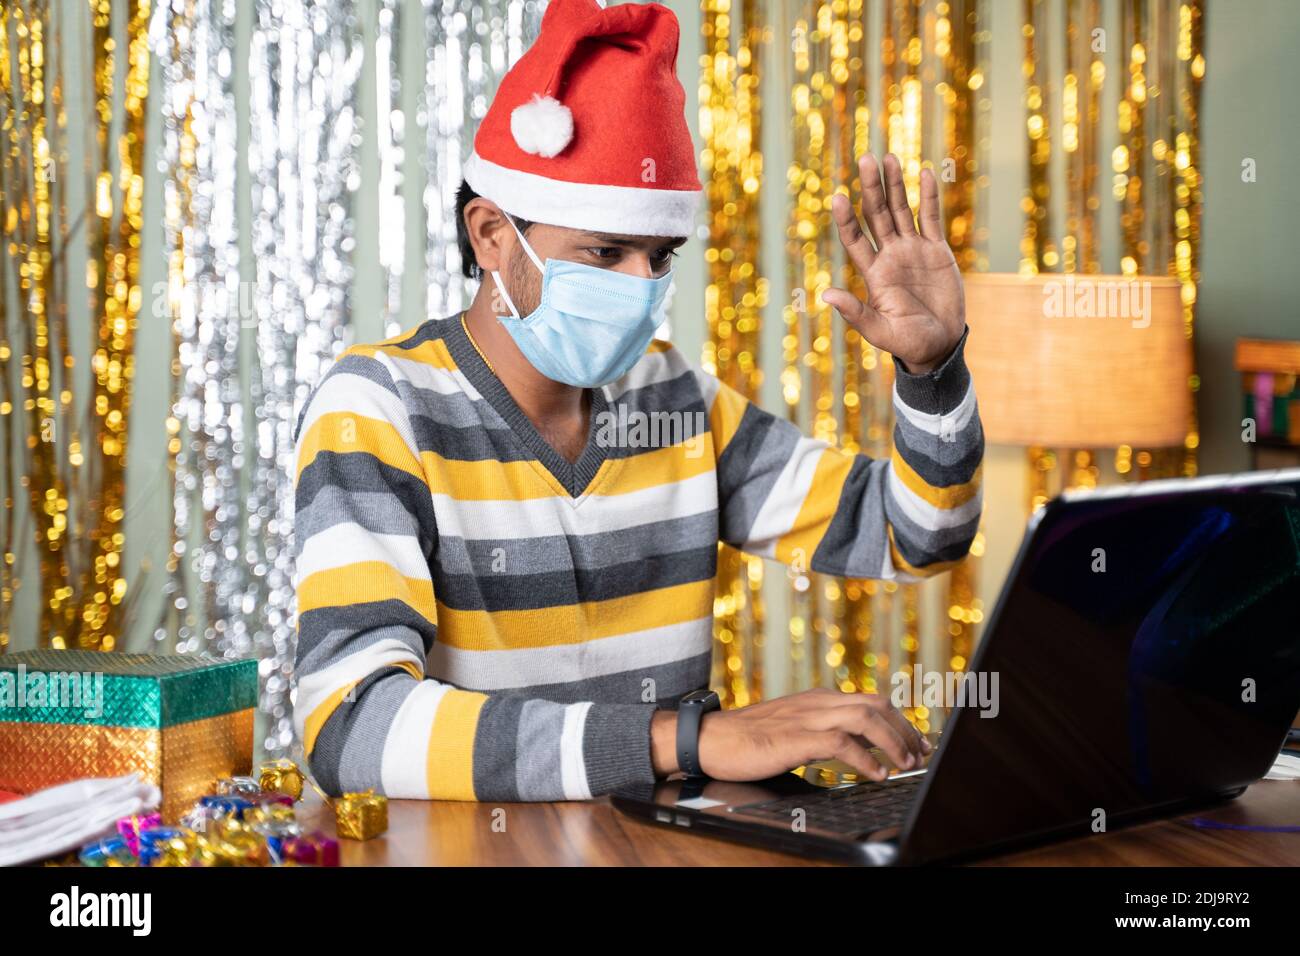 Jeune homme dans un masque médical sur appel vidéo dans un ordinateur portable Pendant Noël ou la fête du nouvel an, avec un décor de fond et cadeaux en avant - concept Banque D'Images